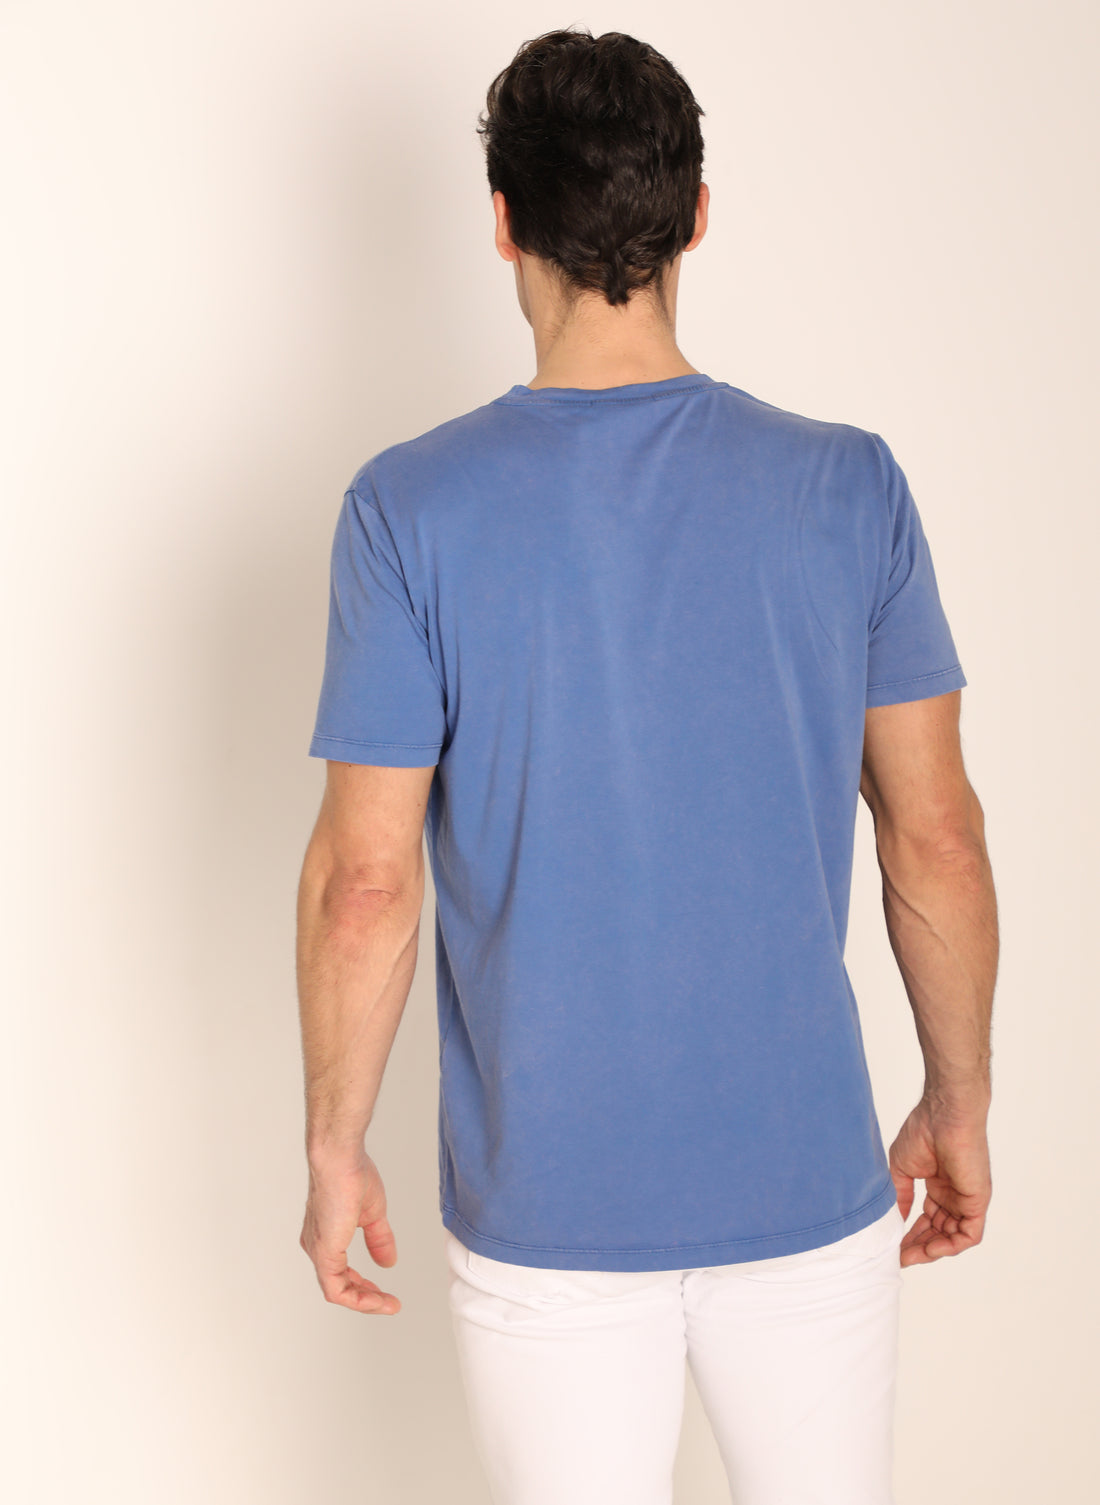 Hellblau gefärbtes T-Shirt für Herren